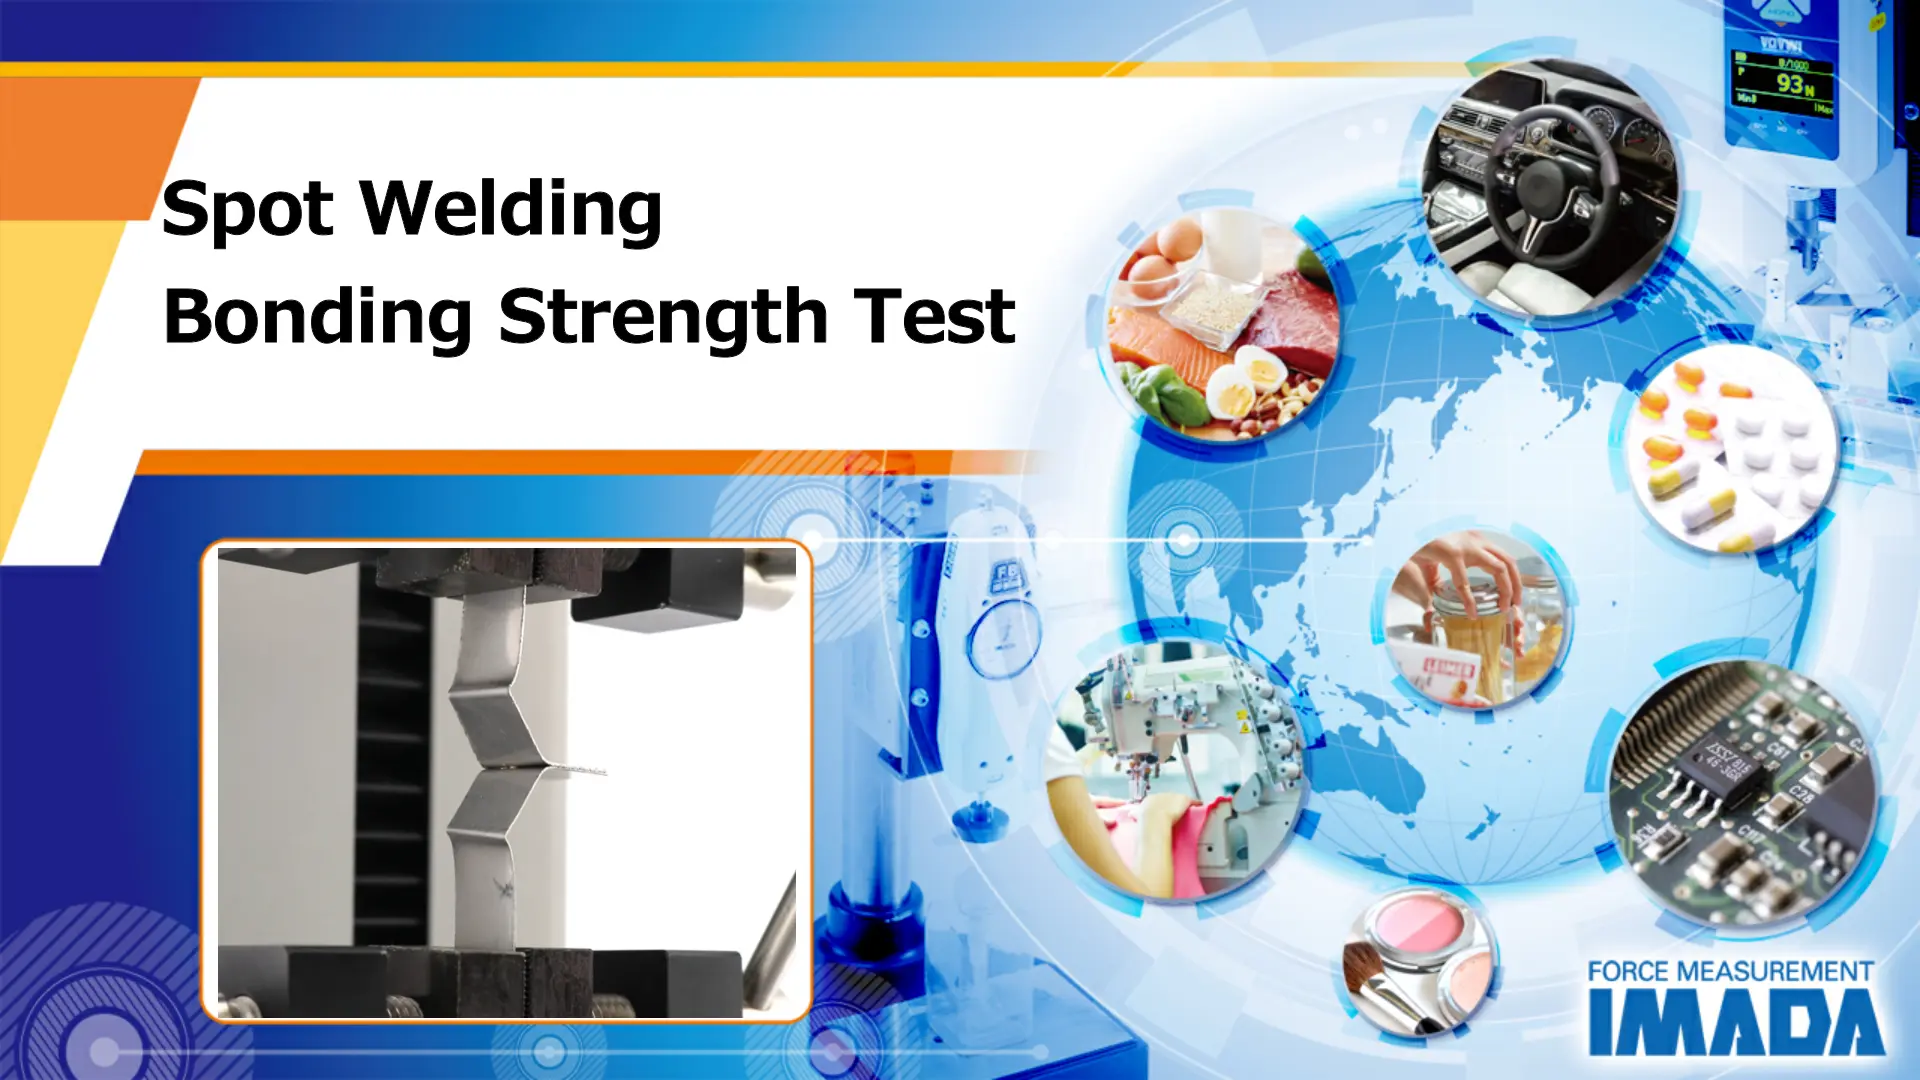 Spot welding bonding strength test